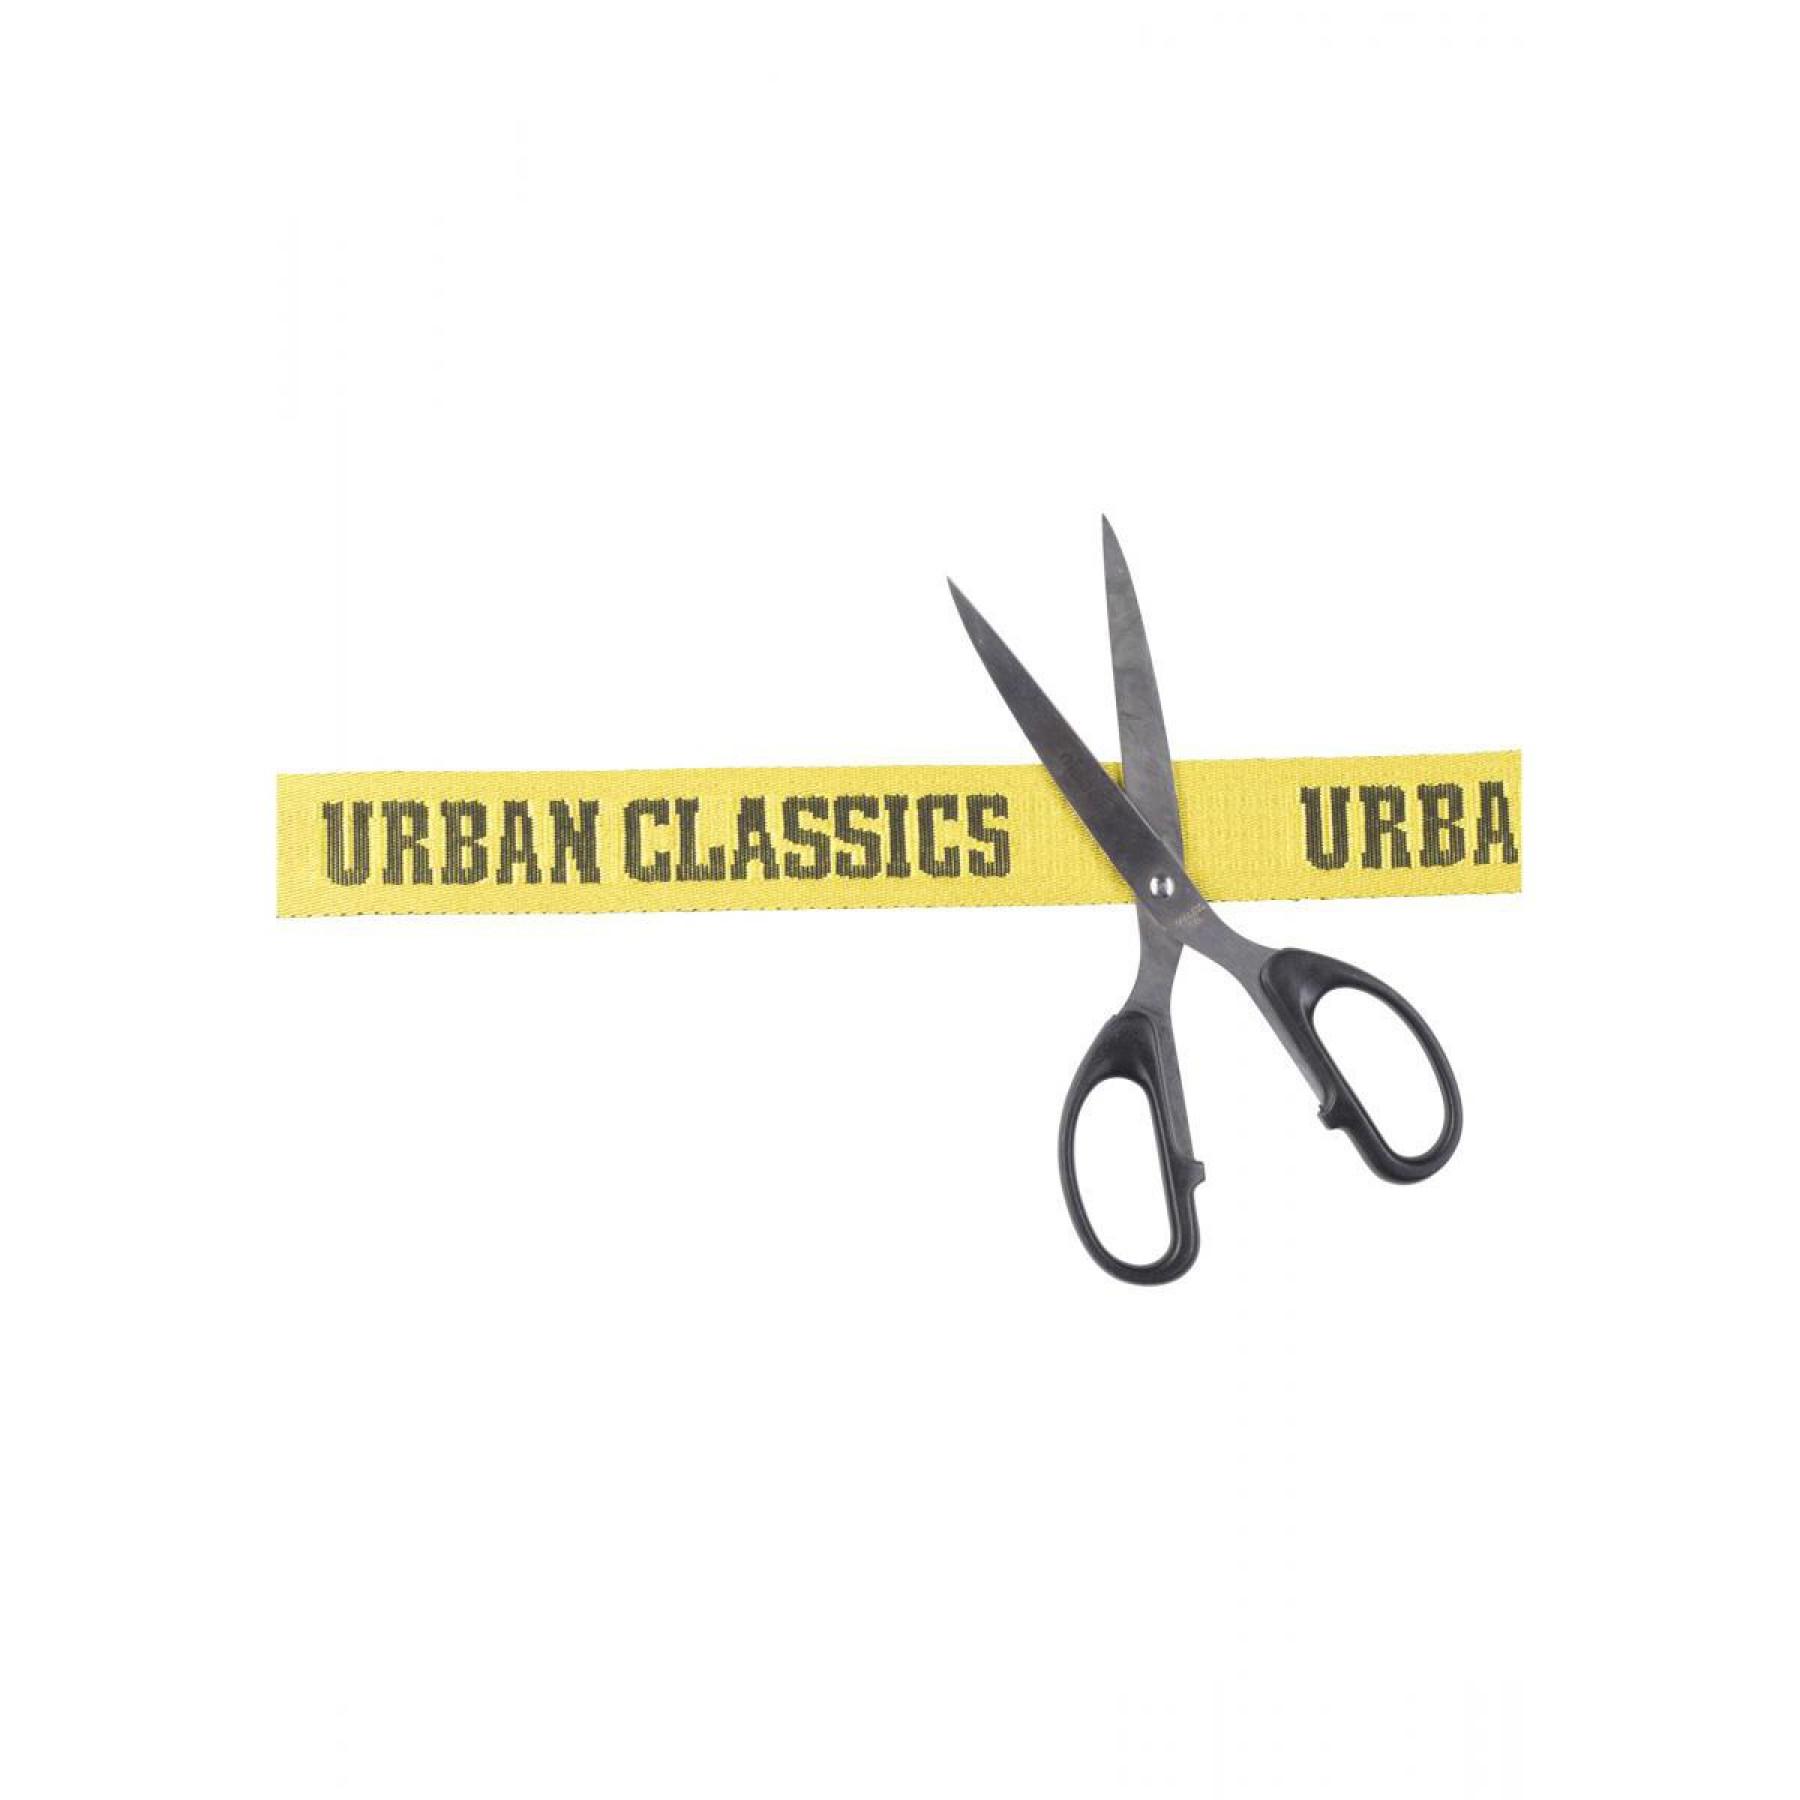 Ceinture Urban Classic jaquard logo